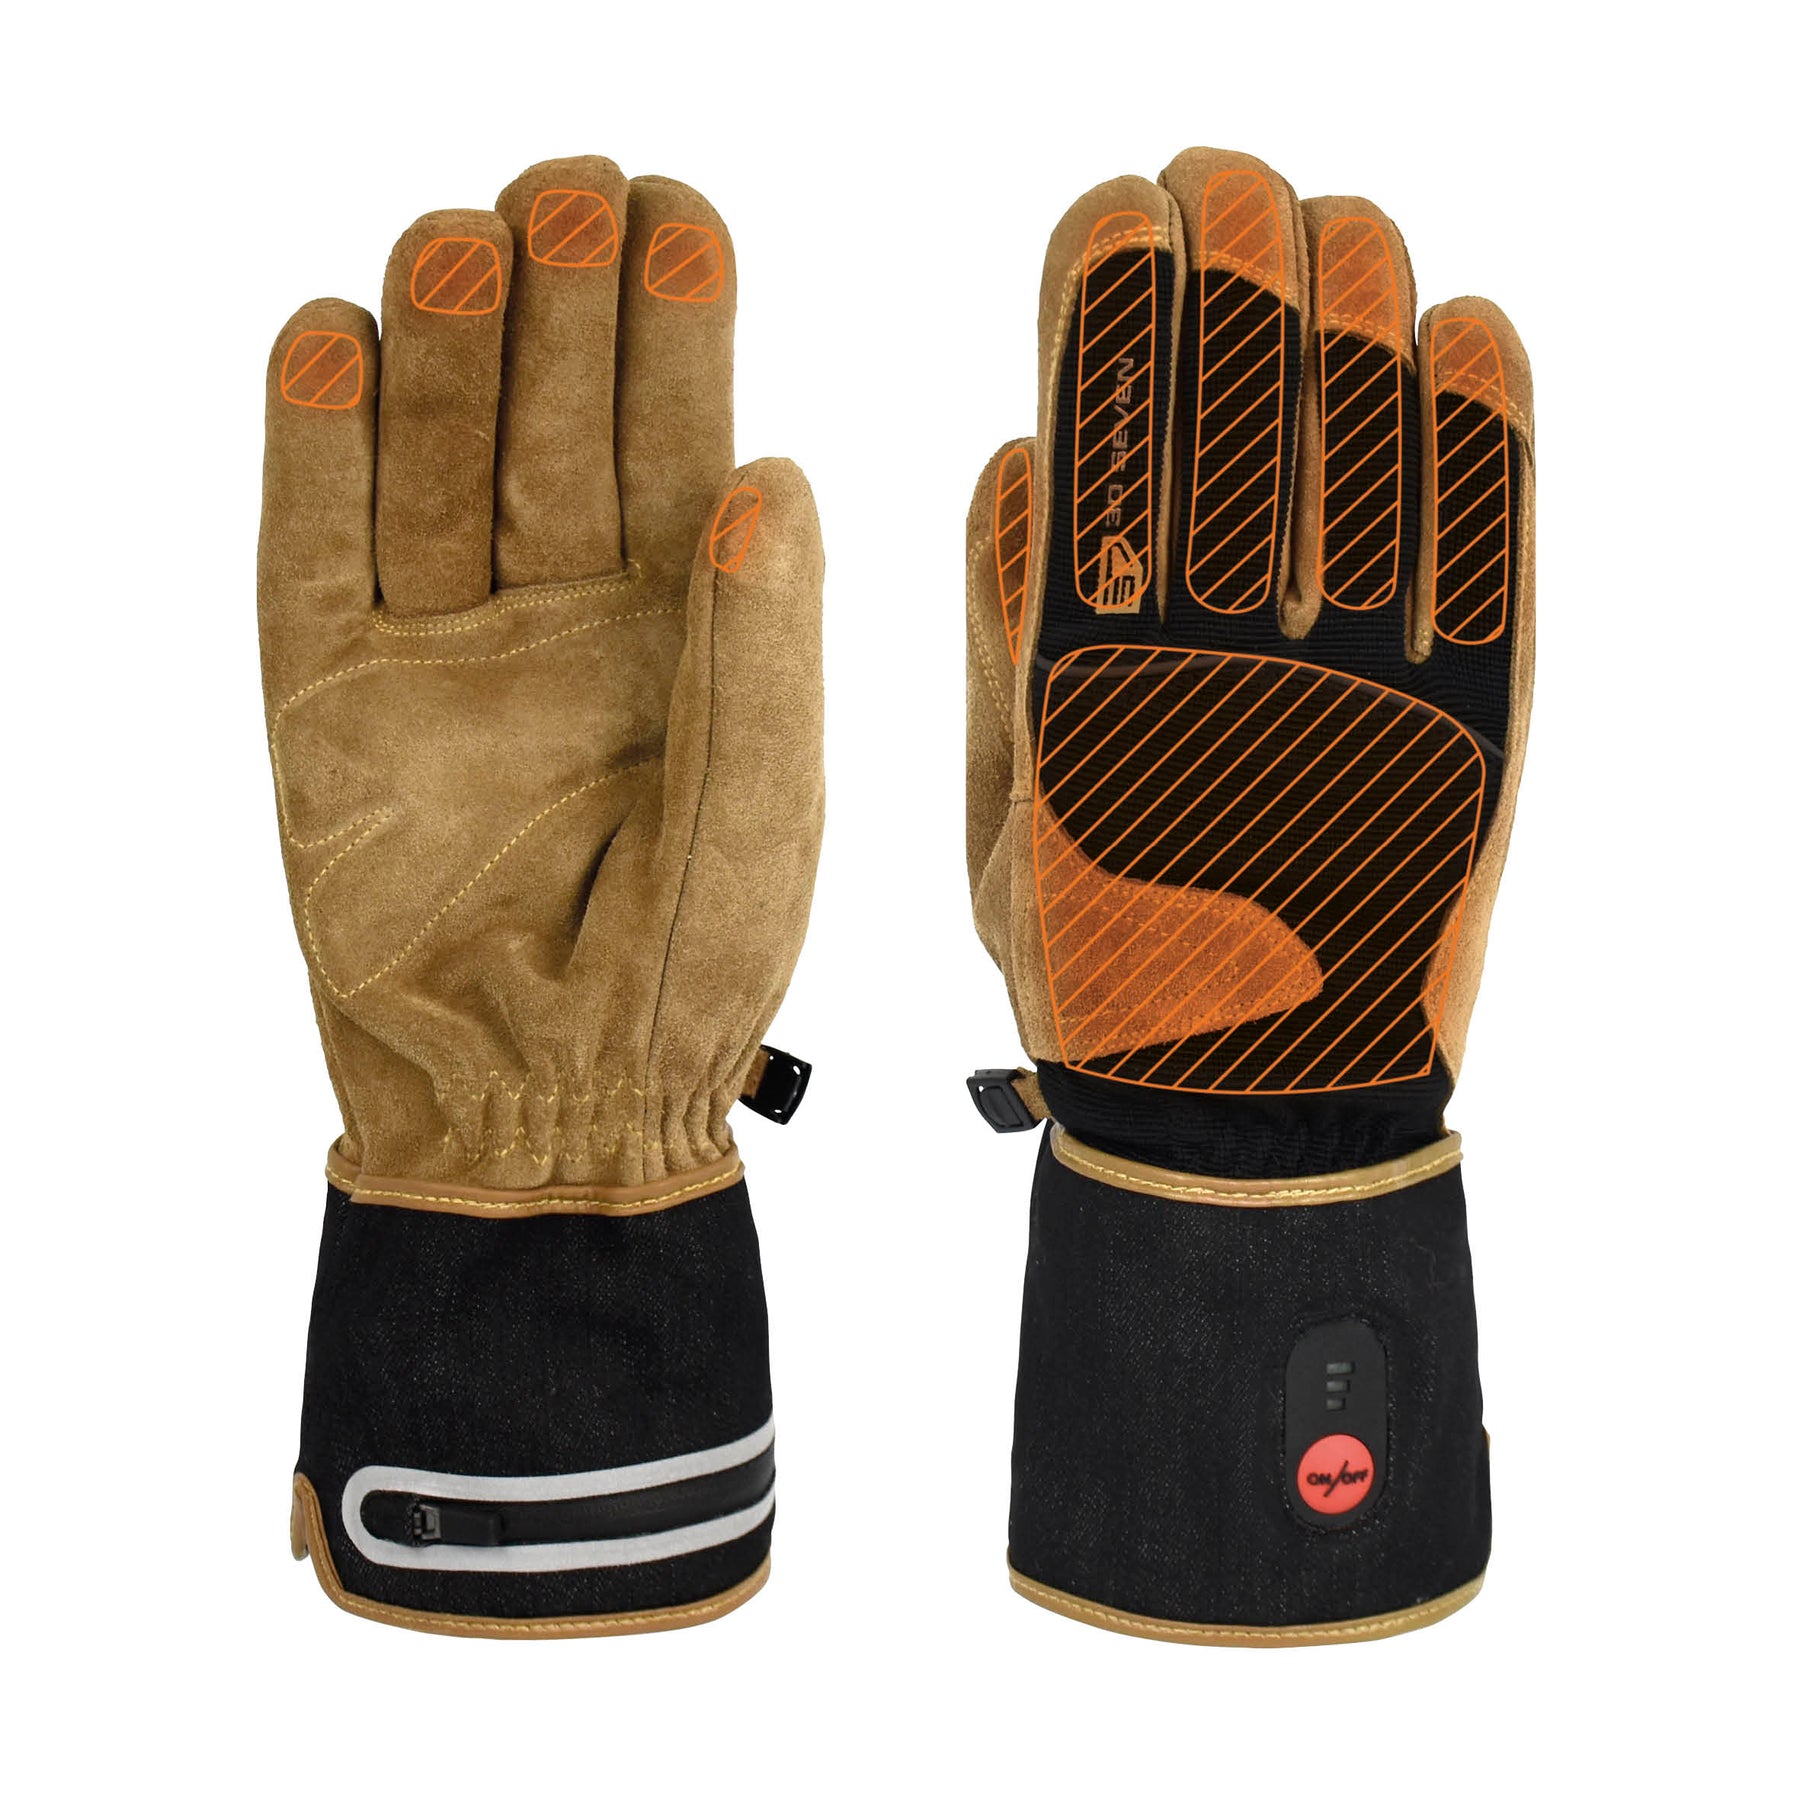 Gilet chauffant Usb avec batterie incluse, gants chauds d'hiver pour hommes  et femmes, écharpe chauffante